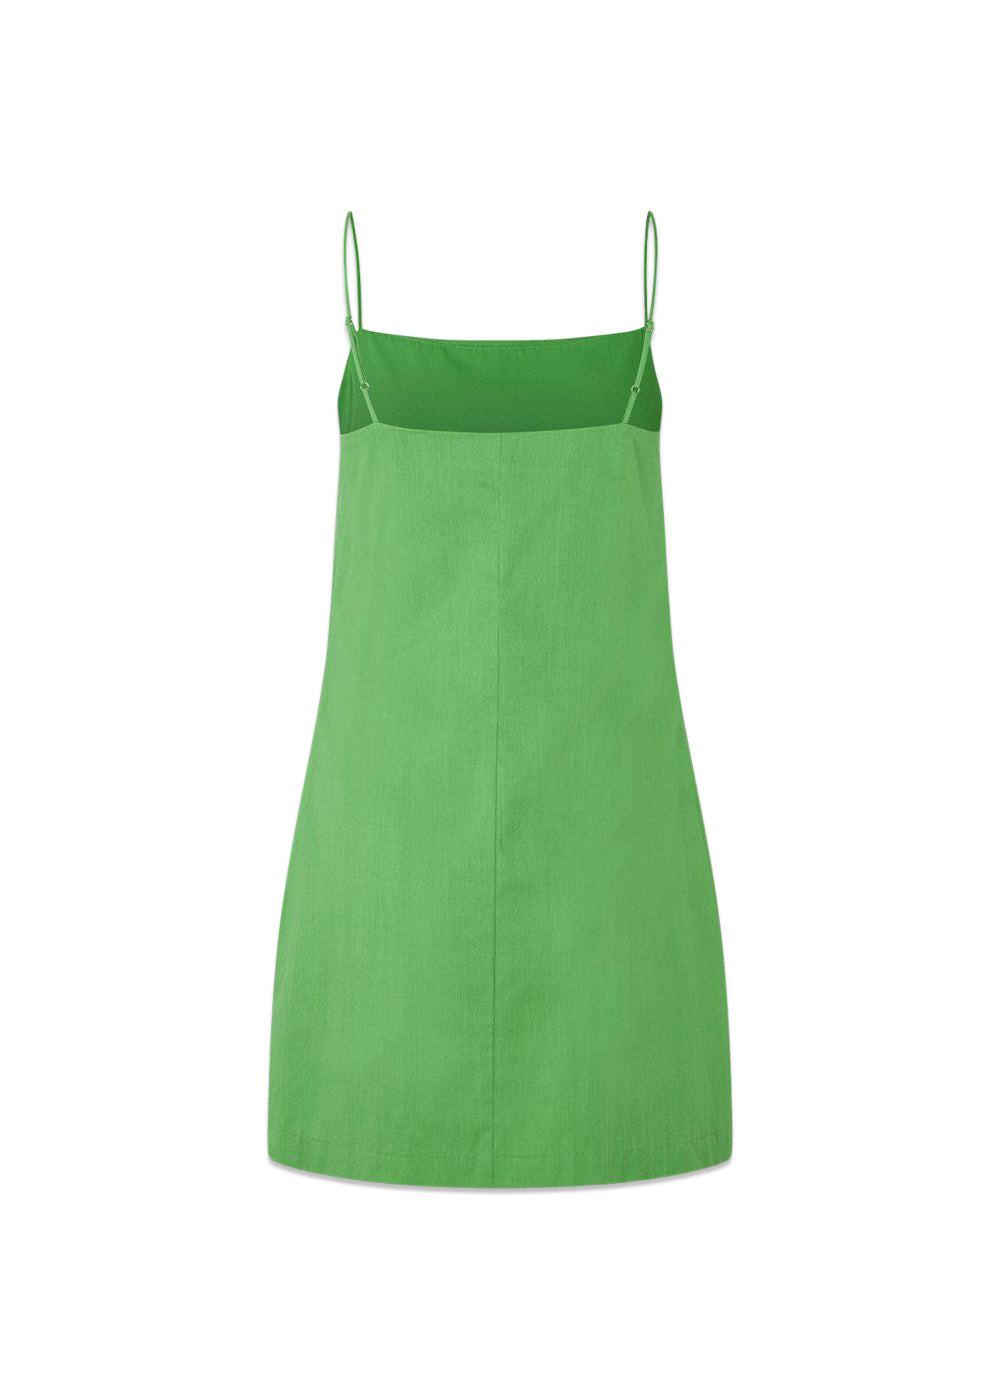 CydneyMD dress - Classic Green